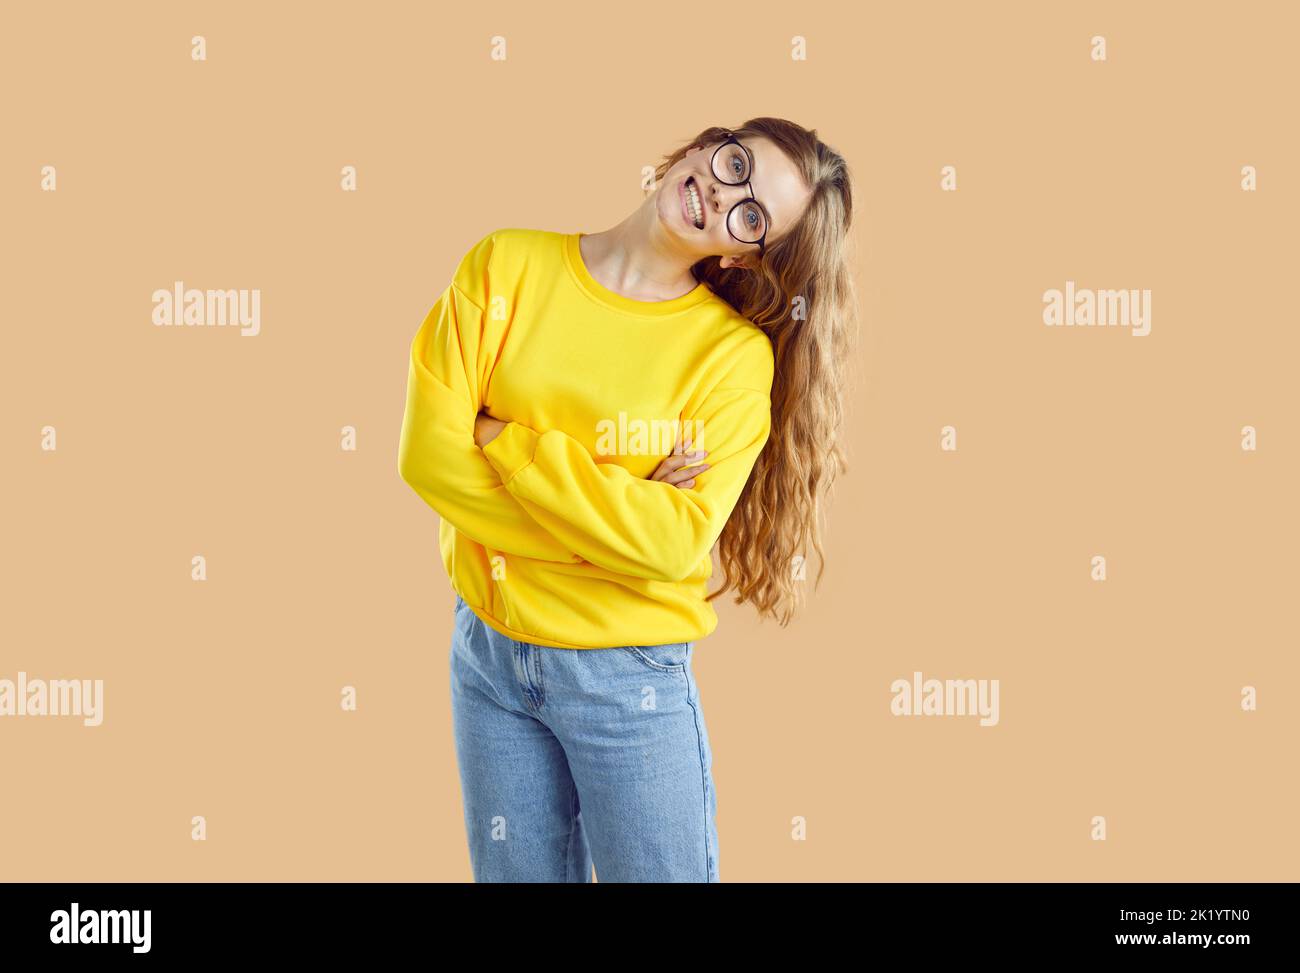 Ritratto di ragazza allegra e goofy con ampio sorriso divertente e pazzo su sfondo beige chiaro. Foto Stock